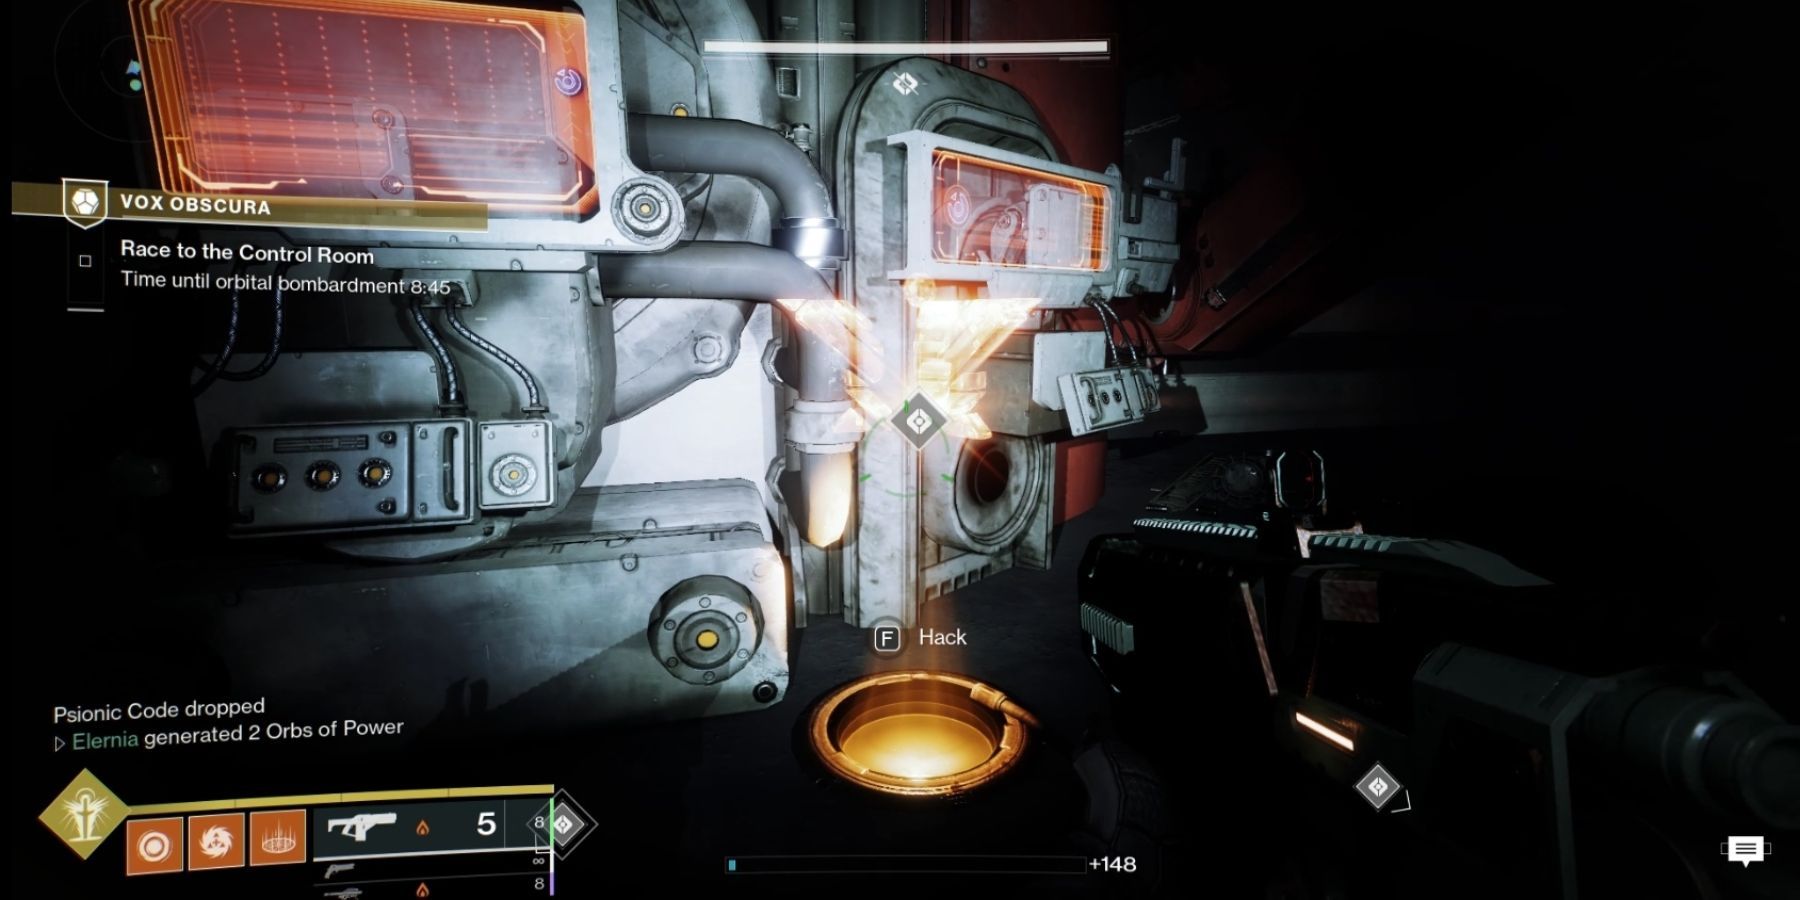 Destiny 2 Hacking The Control Room Door In Vox Obscura